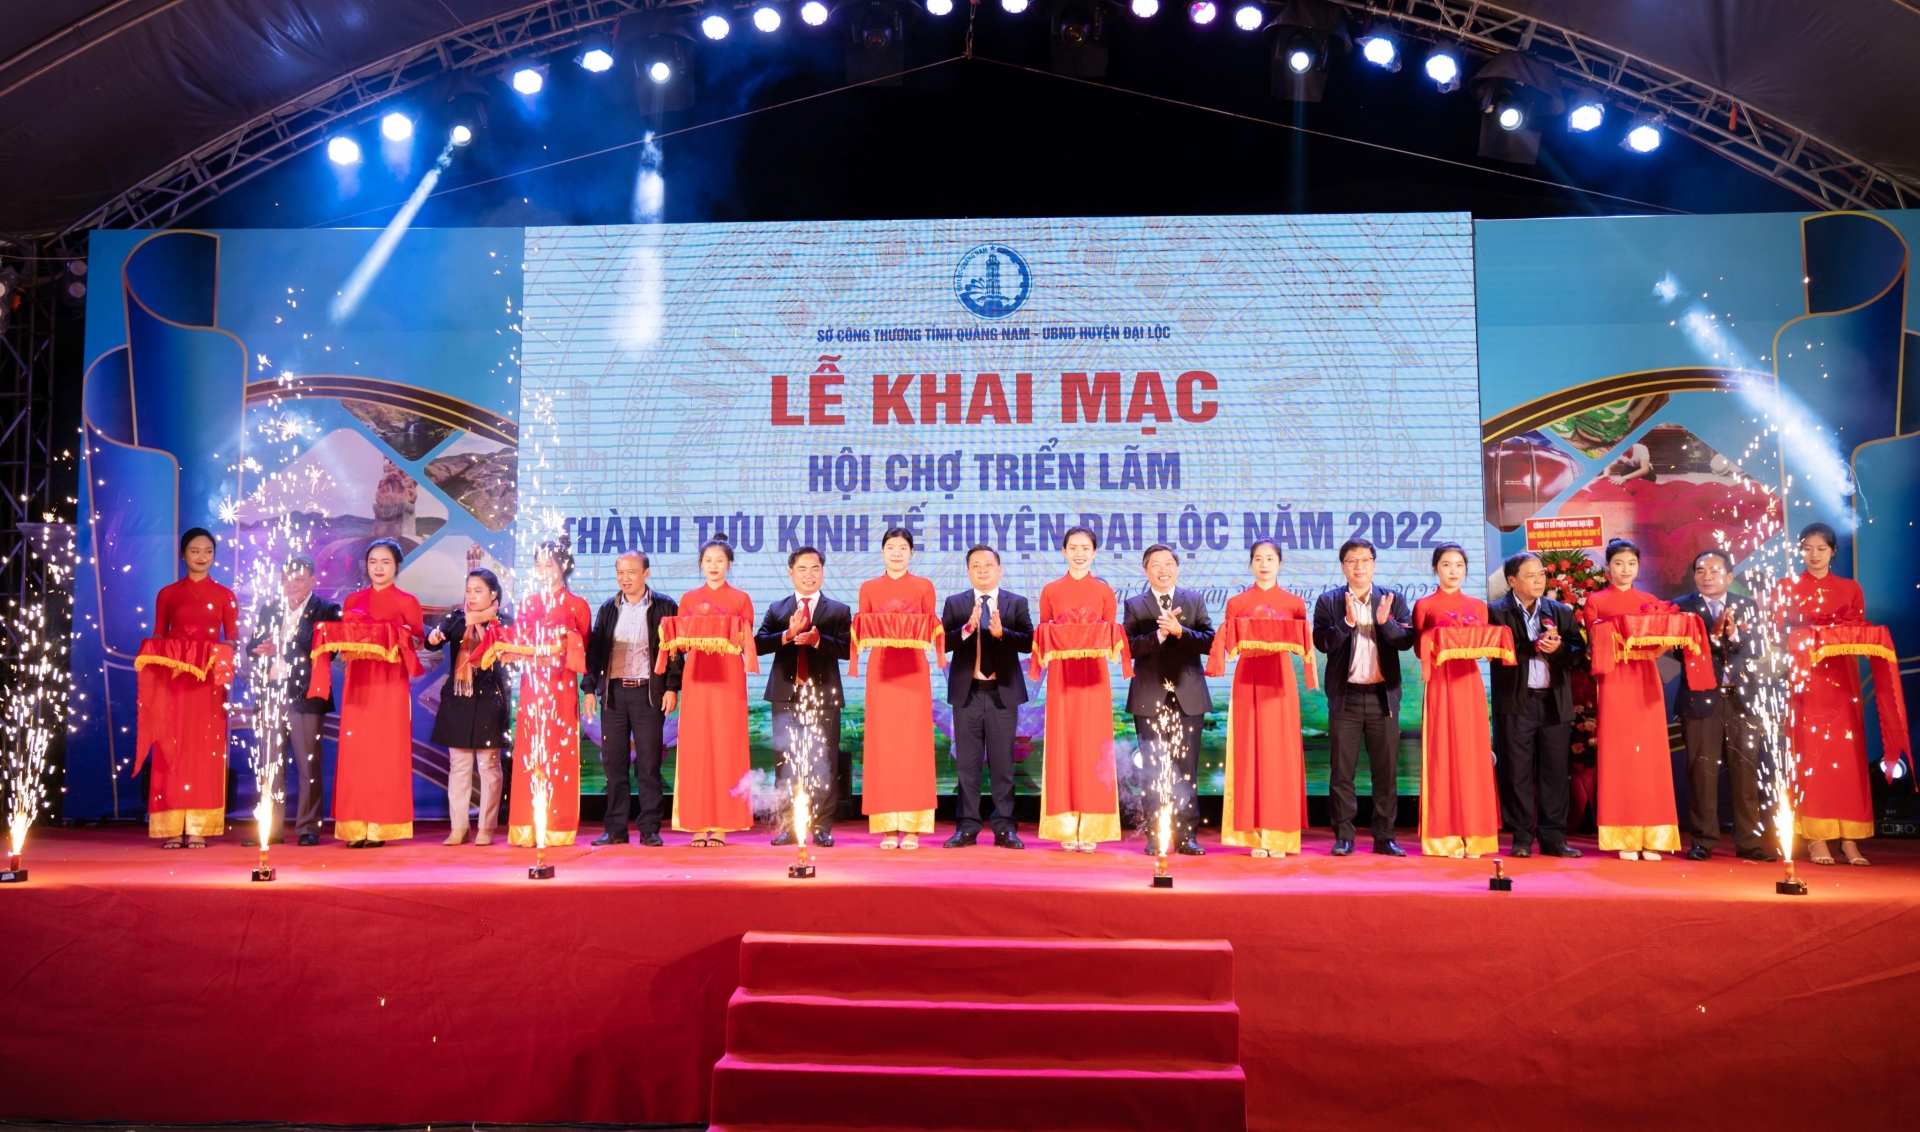 Nghi thức cắt băng khai mạc Hội chợ Triển lãm thành tựu kinh tế huyện Đại Lộc năm 2022.